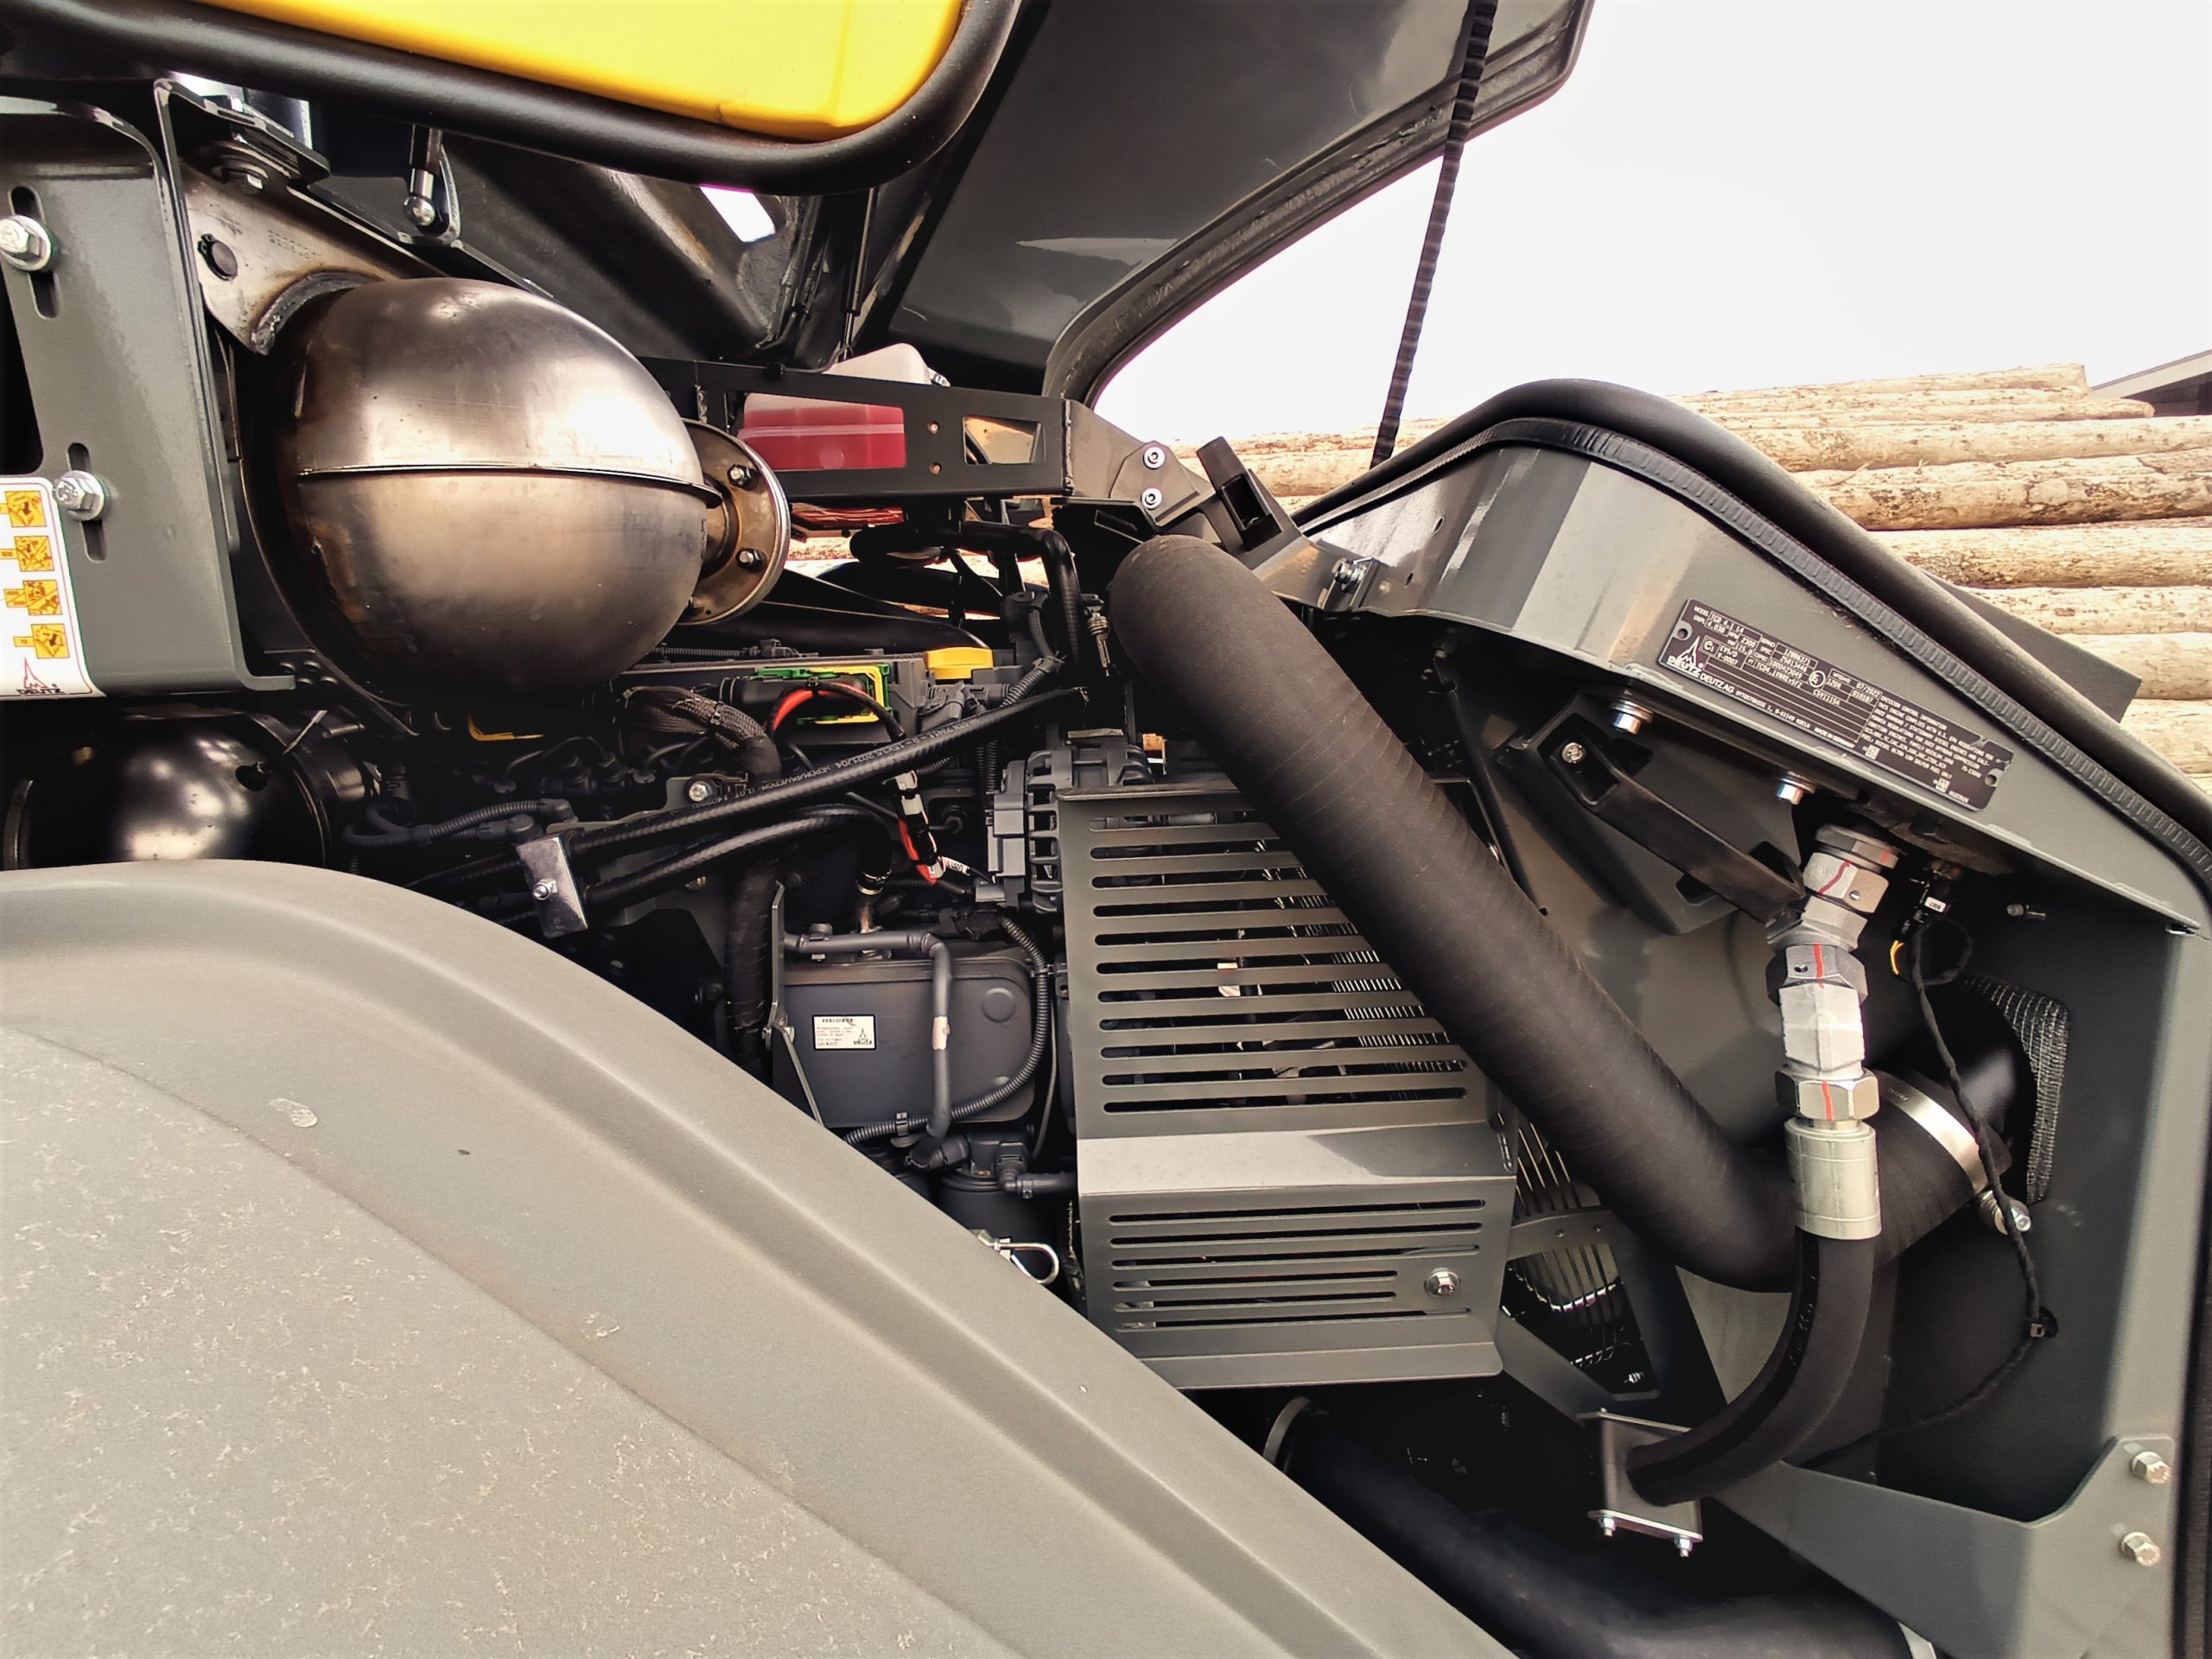 Il Deutz TCD 4.1 L4 è un motore altamente diffuso a livello industriale e agricolo